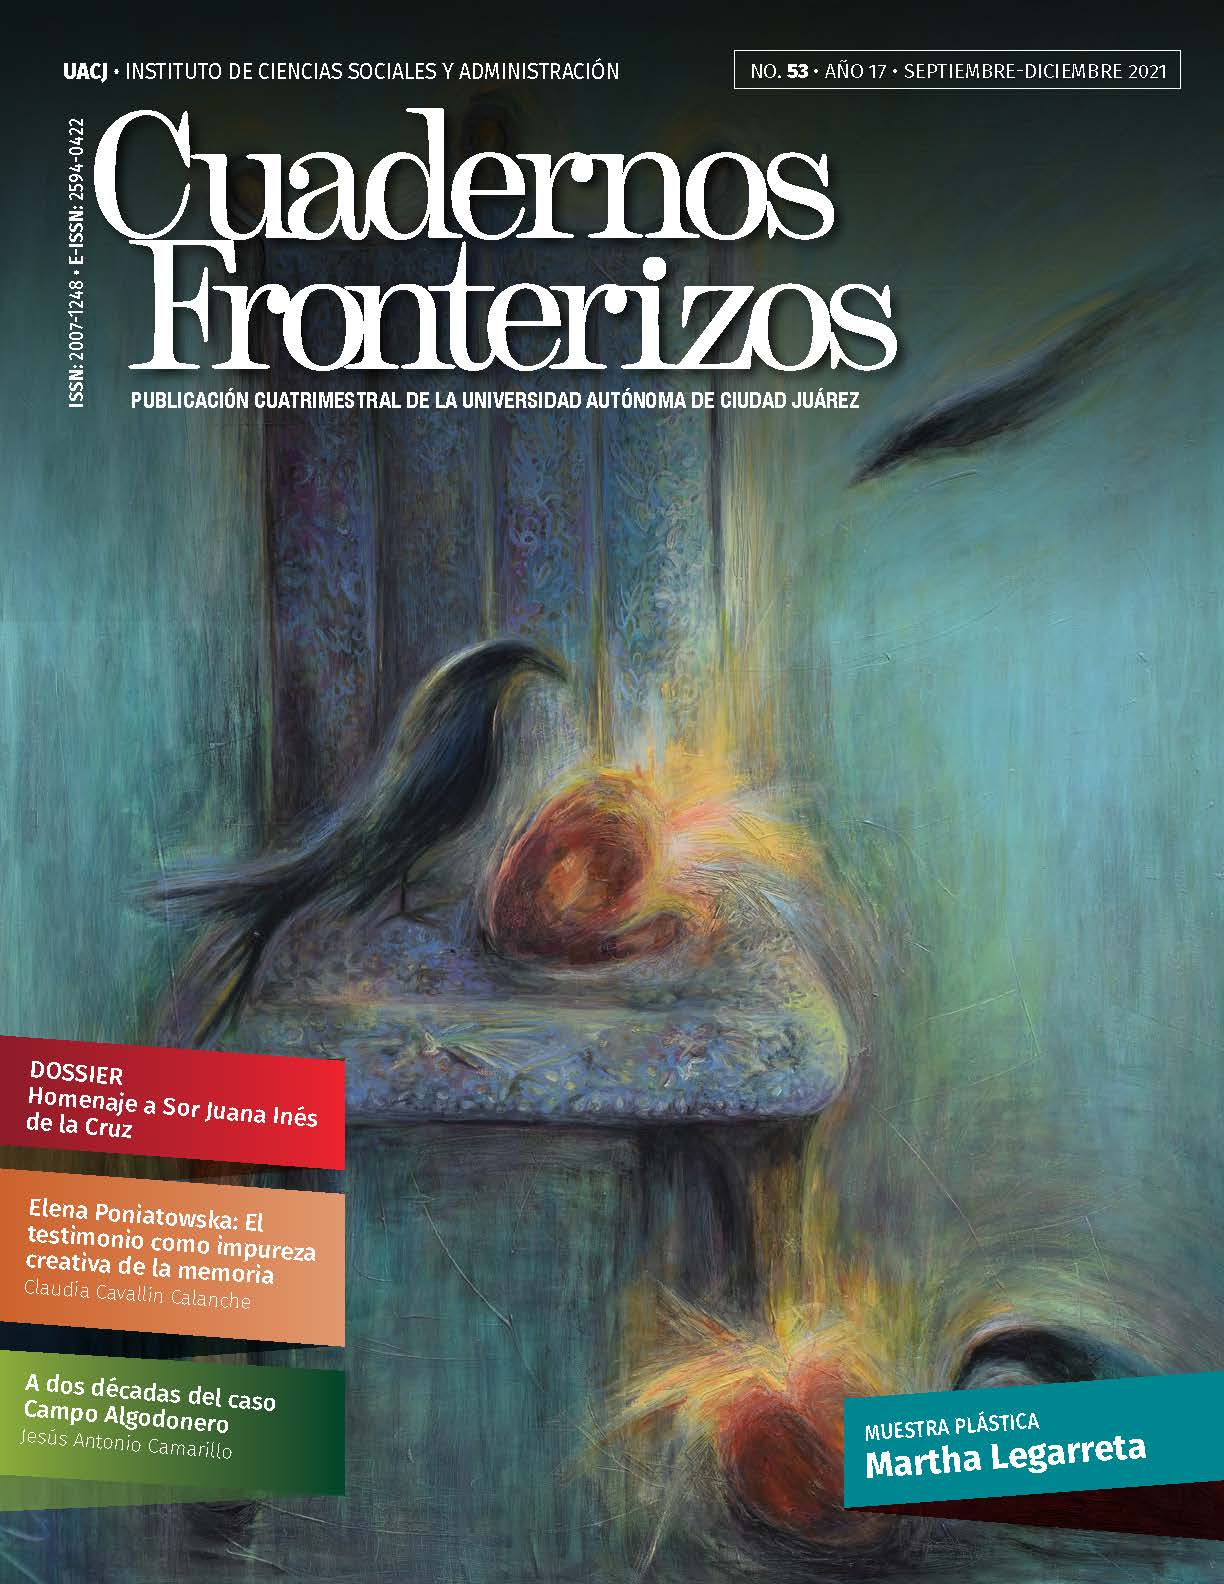 Pedro Siller y Cuadernos Fronterizos